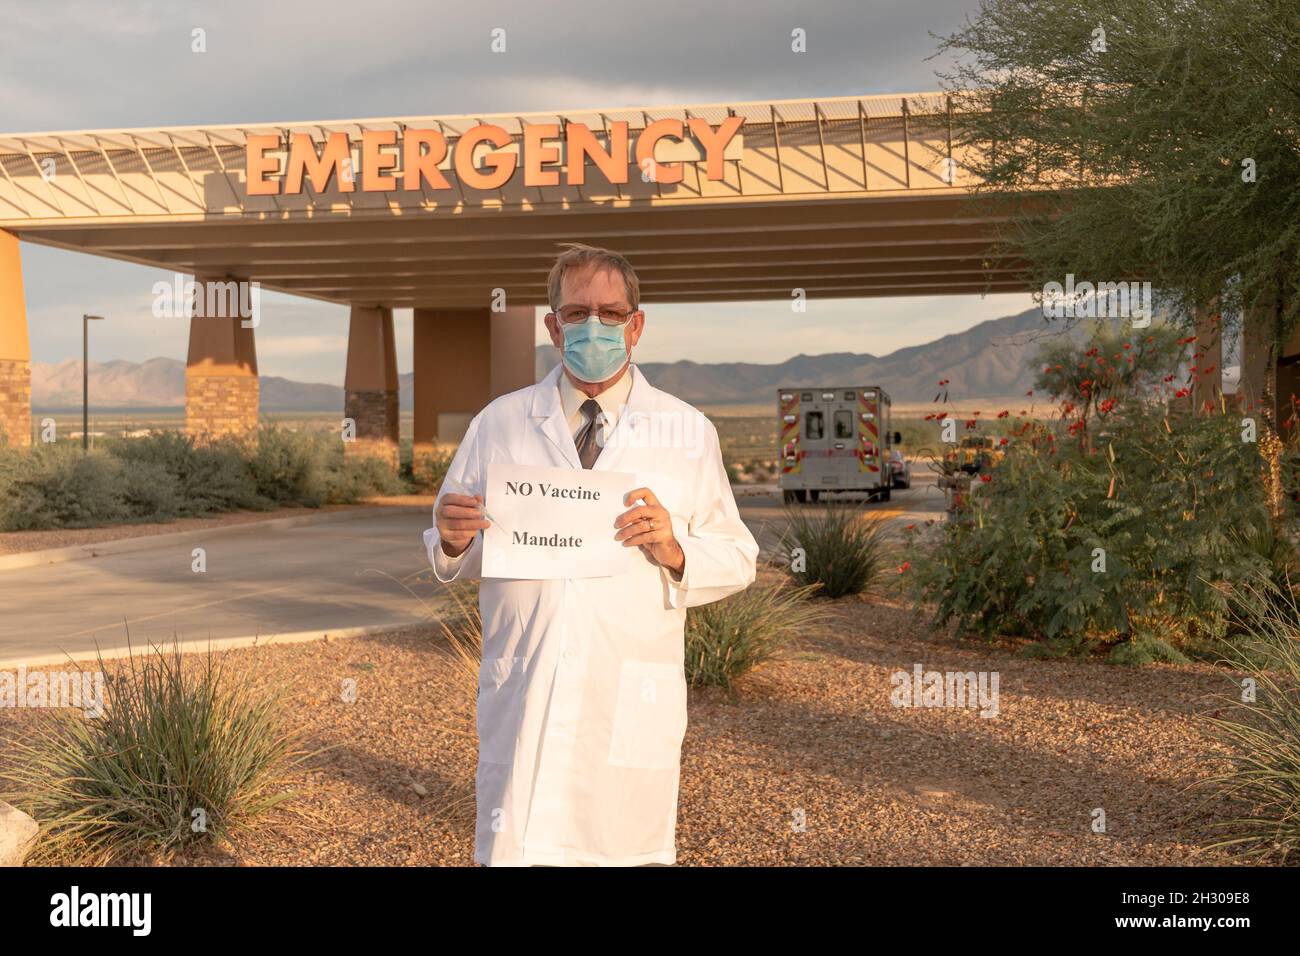 El médico en la capa blanca y la máscara sostiene el signo anti-vacuna frente a la caída de emergencia Foto de stock